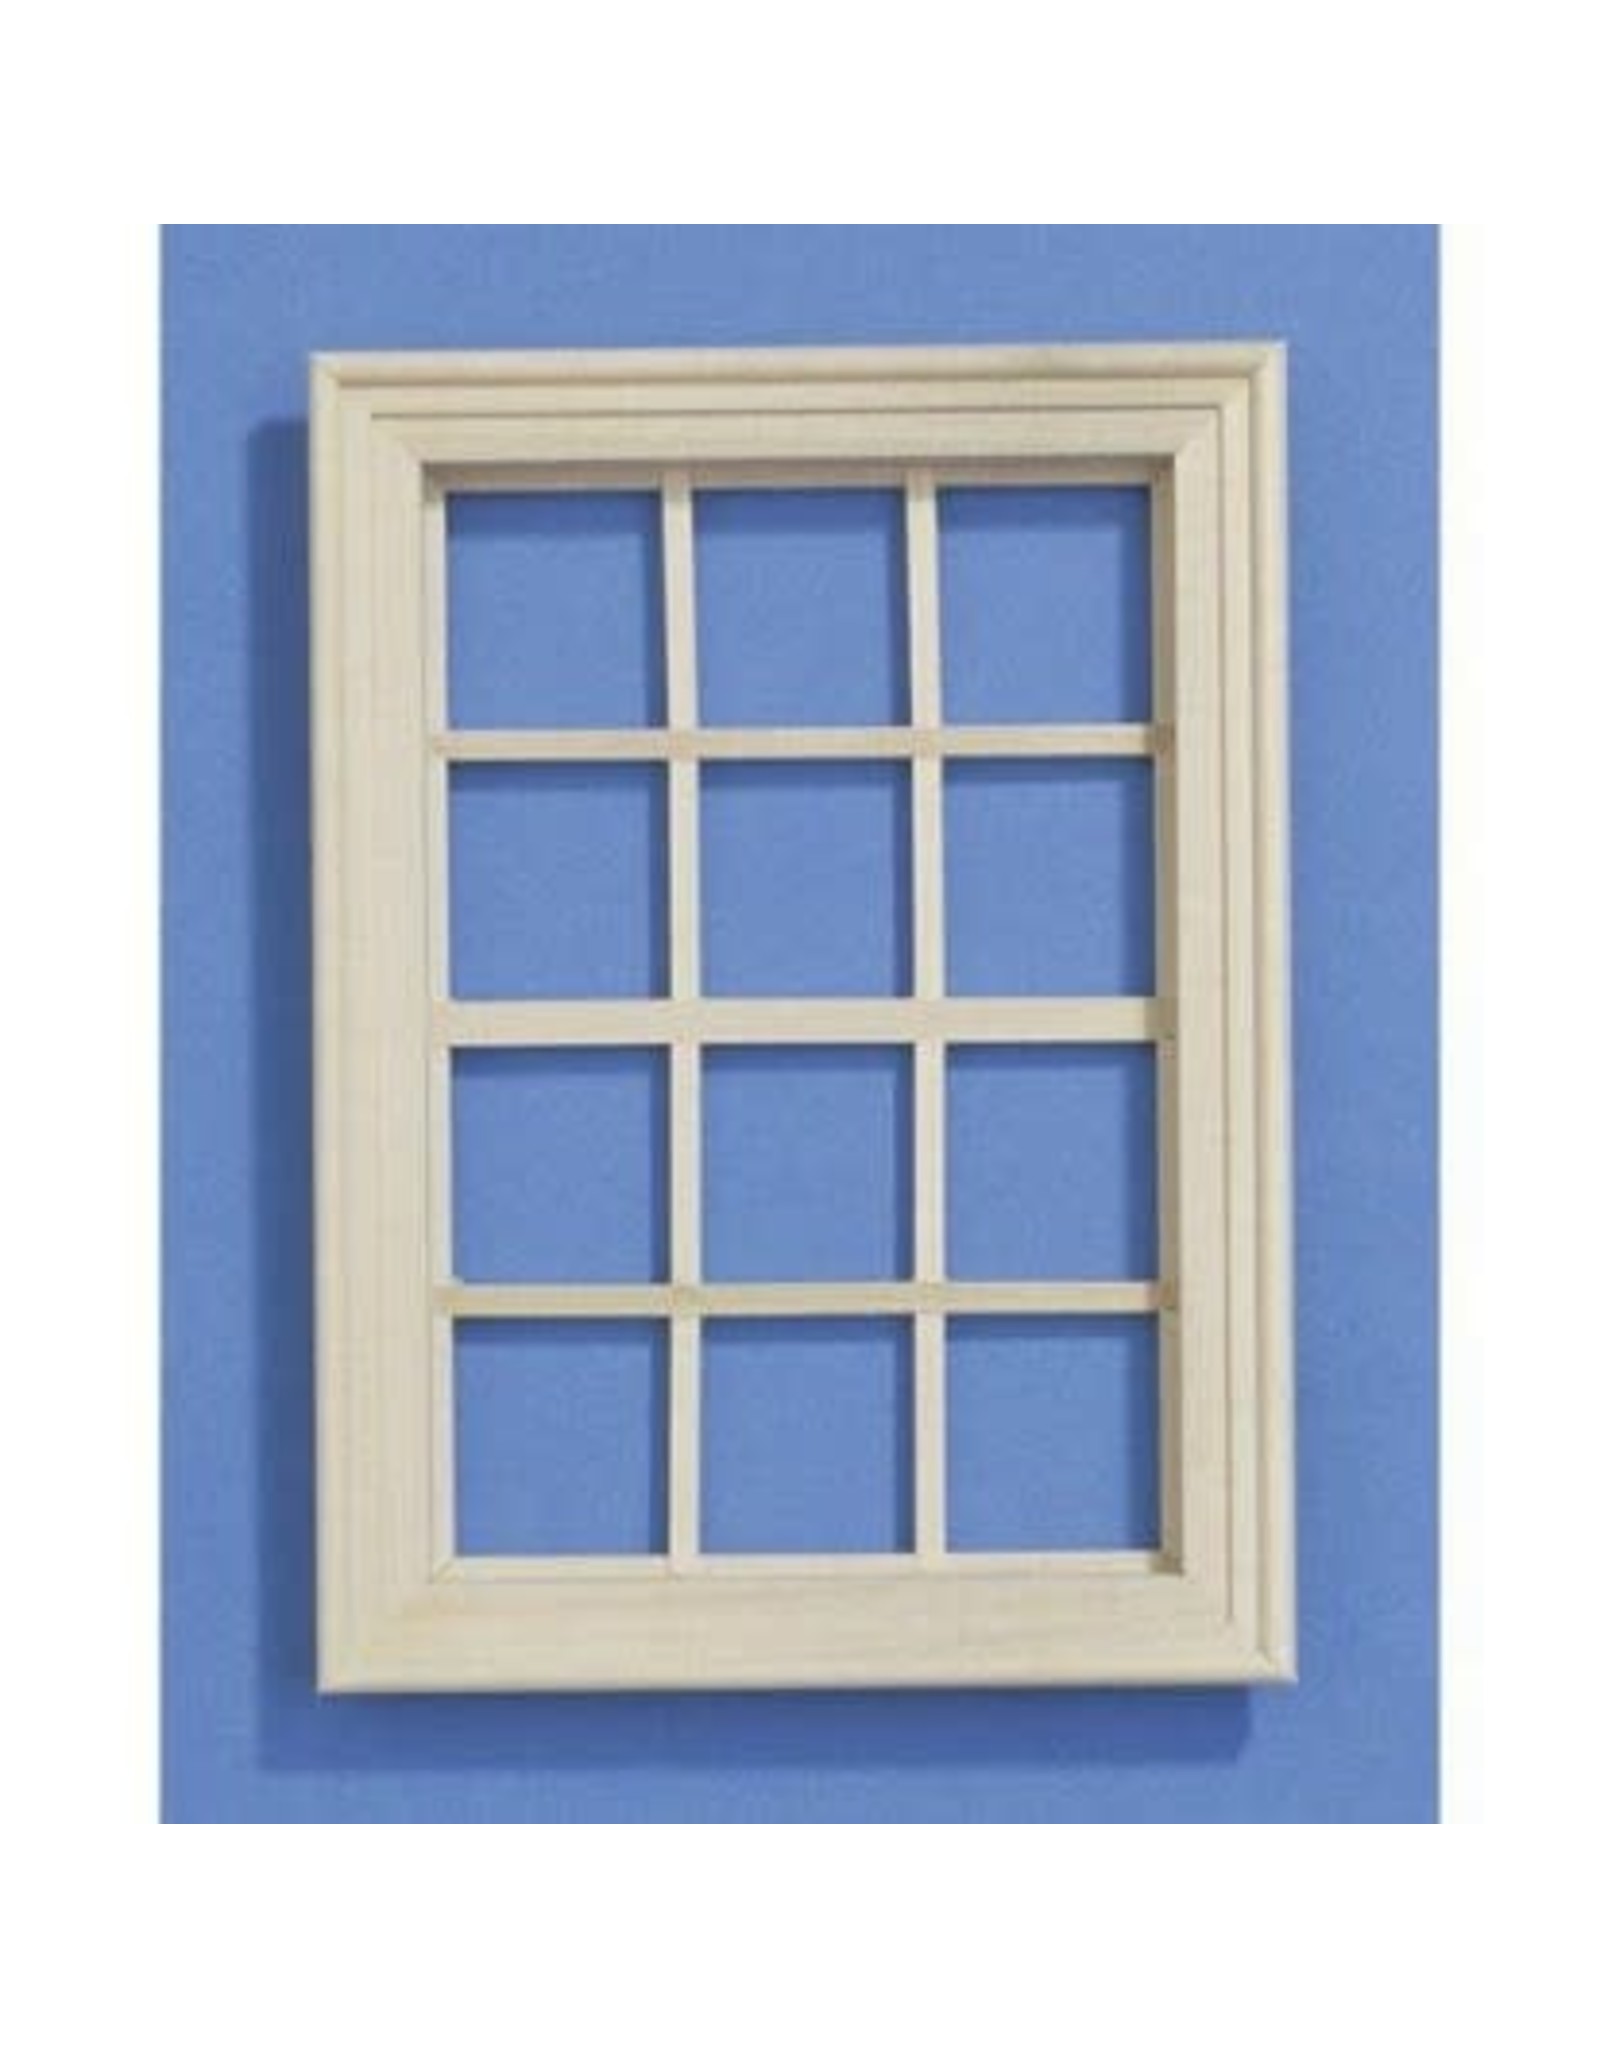 Fenêtre en bois (moyenne) miniature 1:12